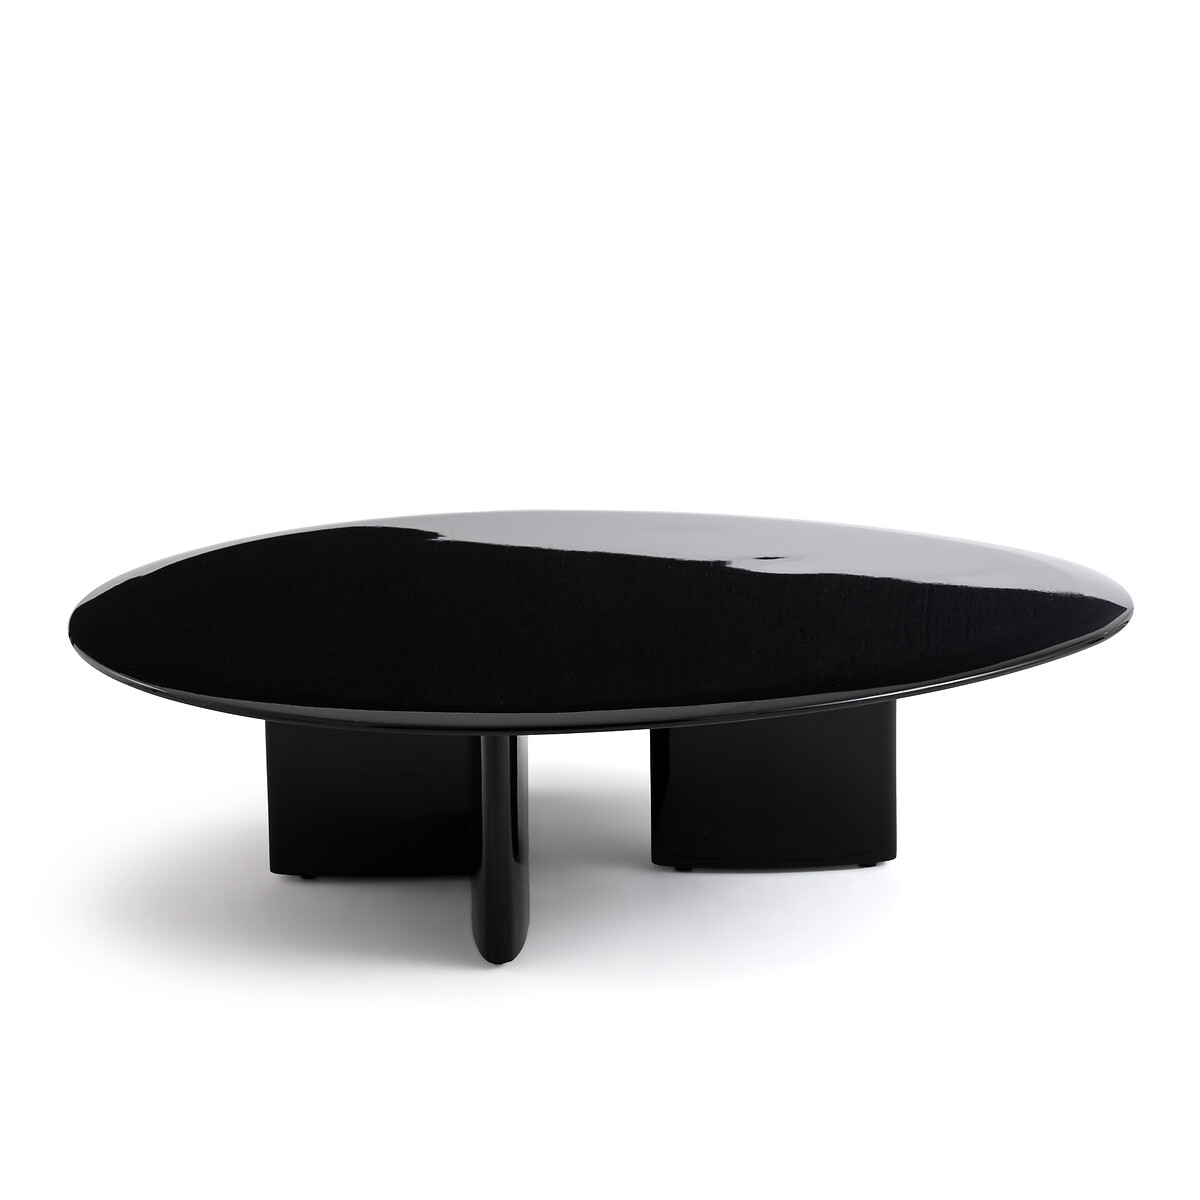 Стол журнальный лакированный Laki единый размер черный стол журнальный из стали arev единый размер черный